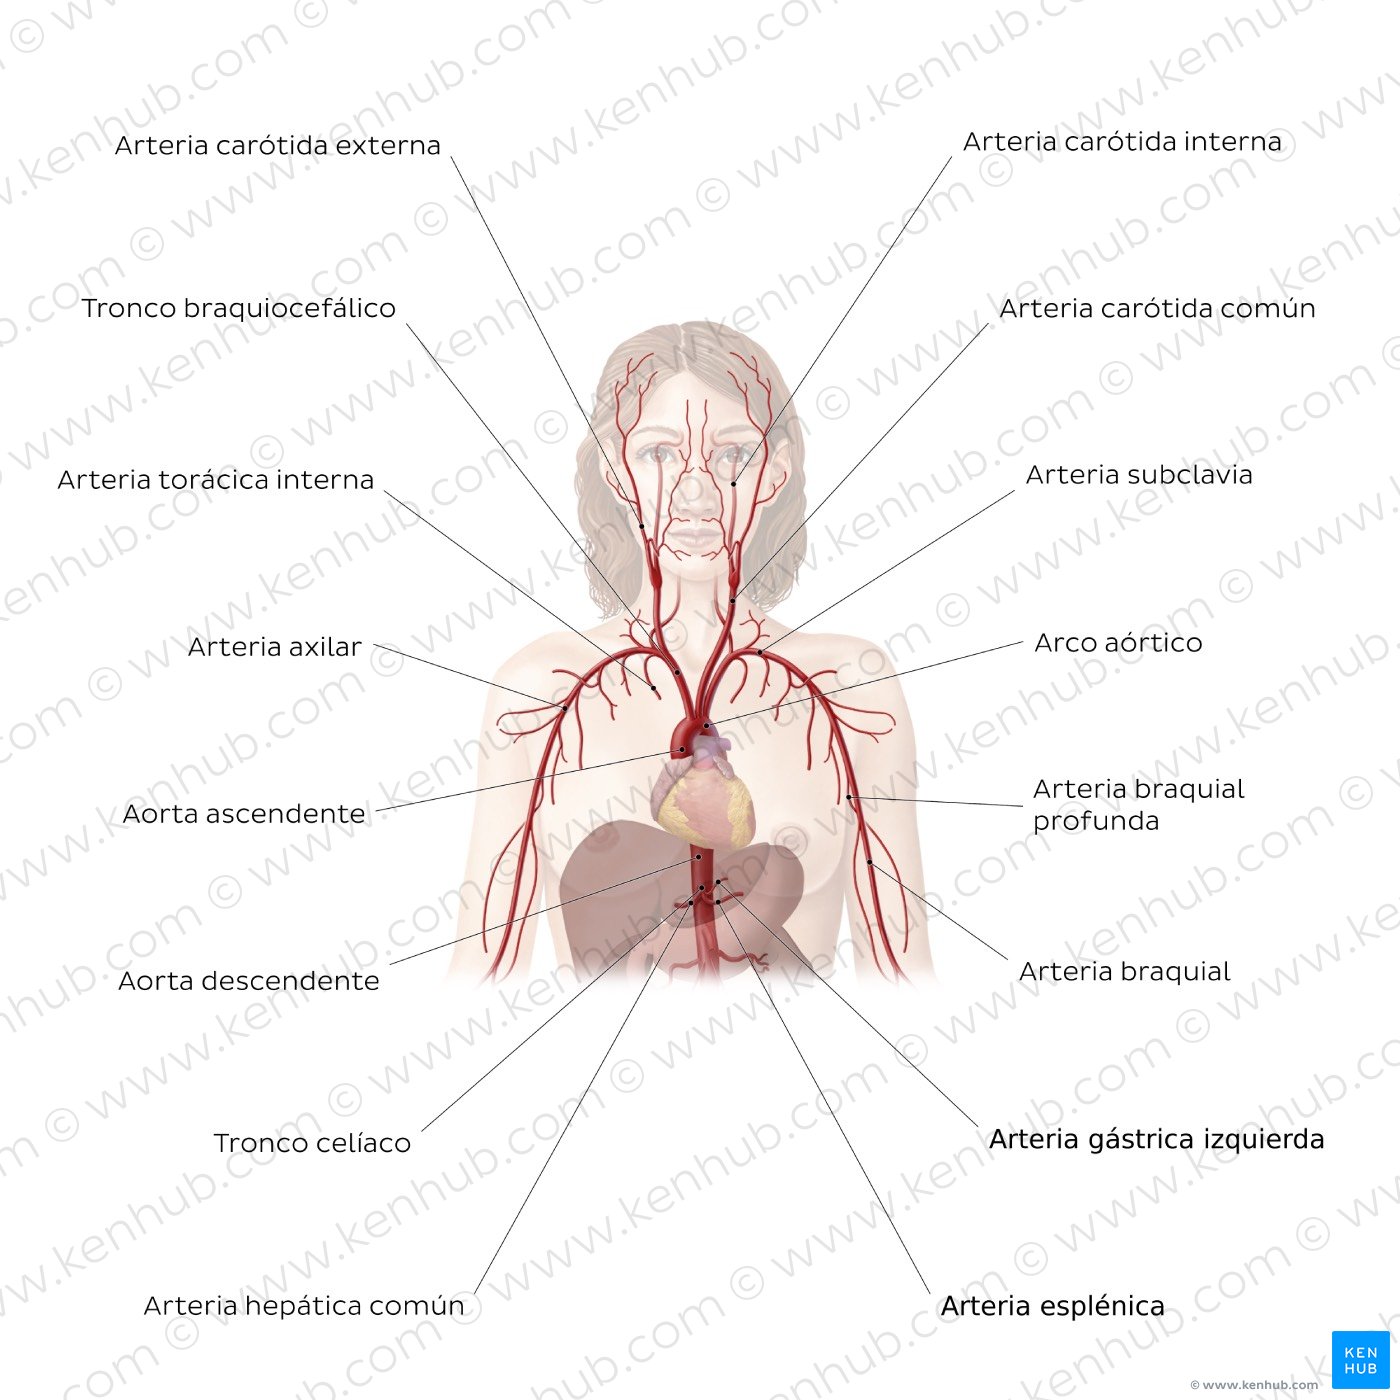 Sistema cardiovascular: Arterias de la porción superior del cuerpo